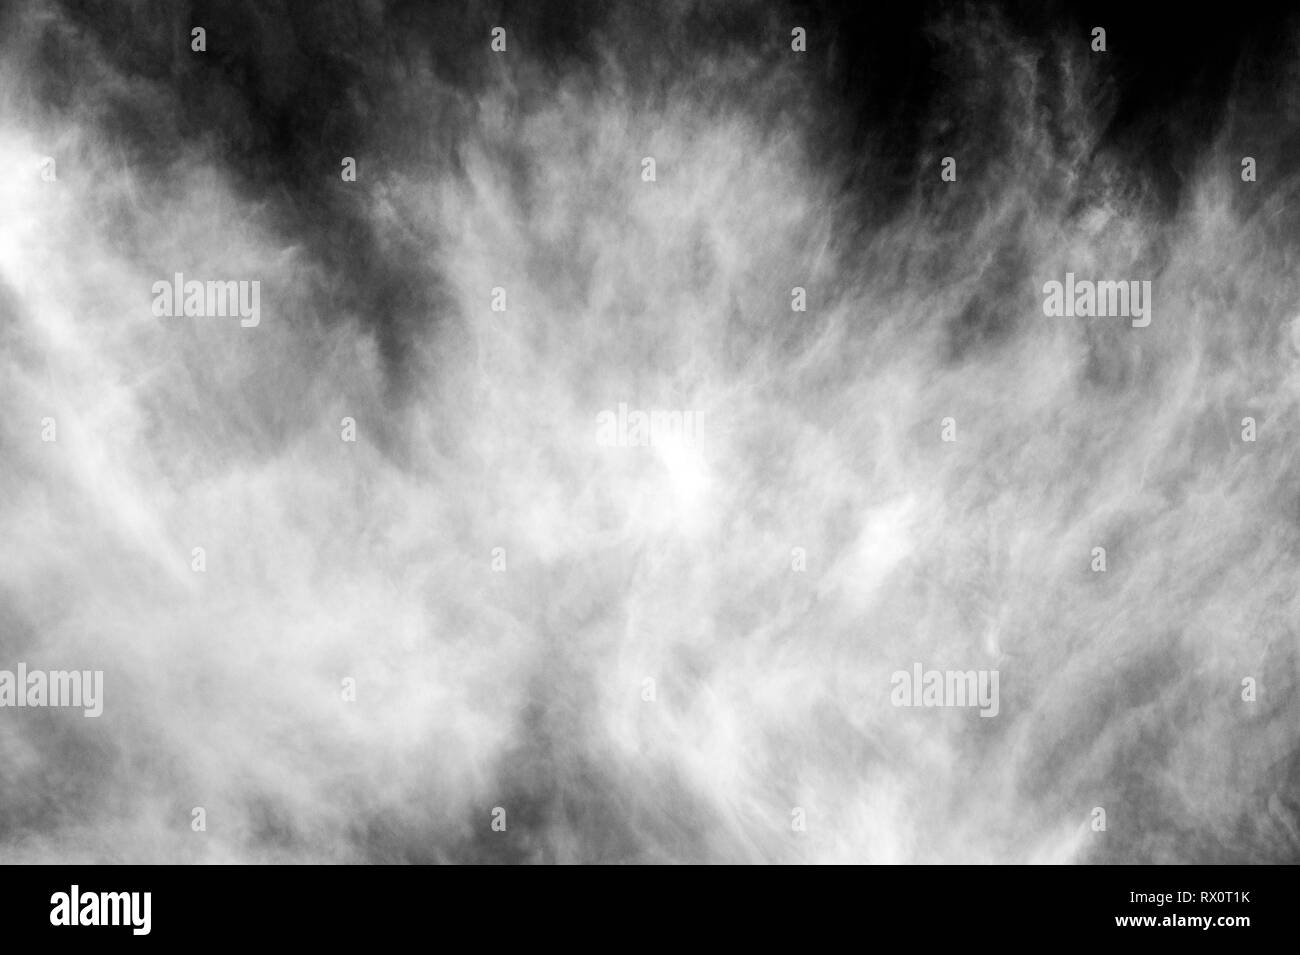 Les nuages Cirrus dans le ciel bleu avec une vision spectaculaire en noir et blanc Banque D'Images